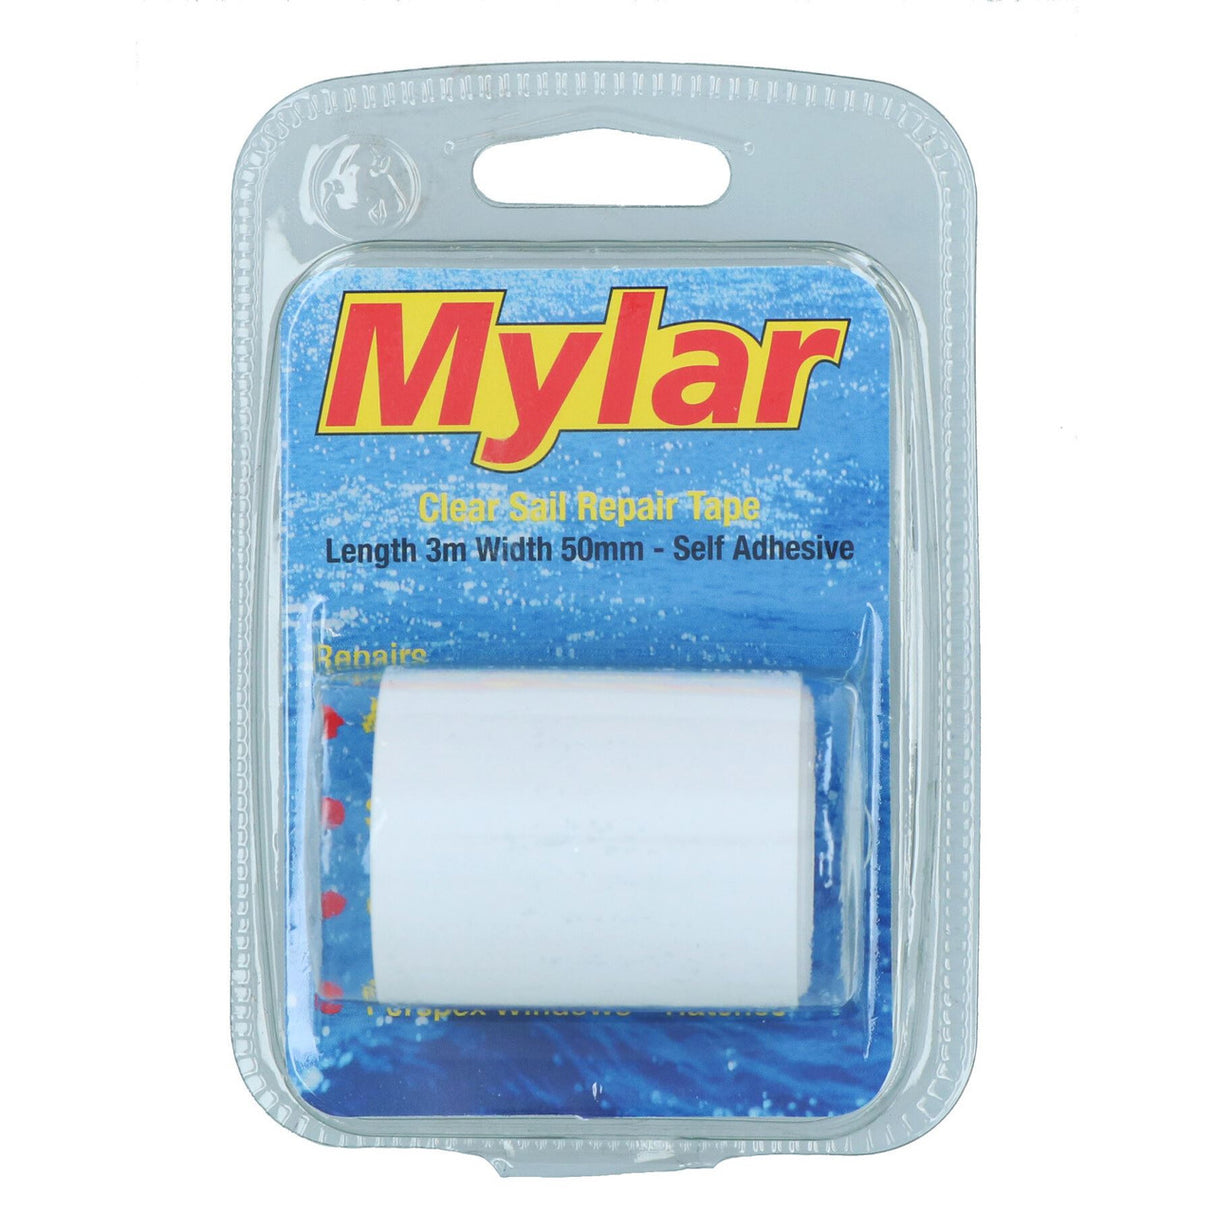 MYLAR CLEAR SAIL REPAIR TAPE 3M X 50MM